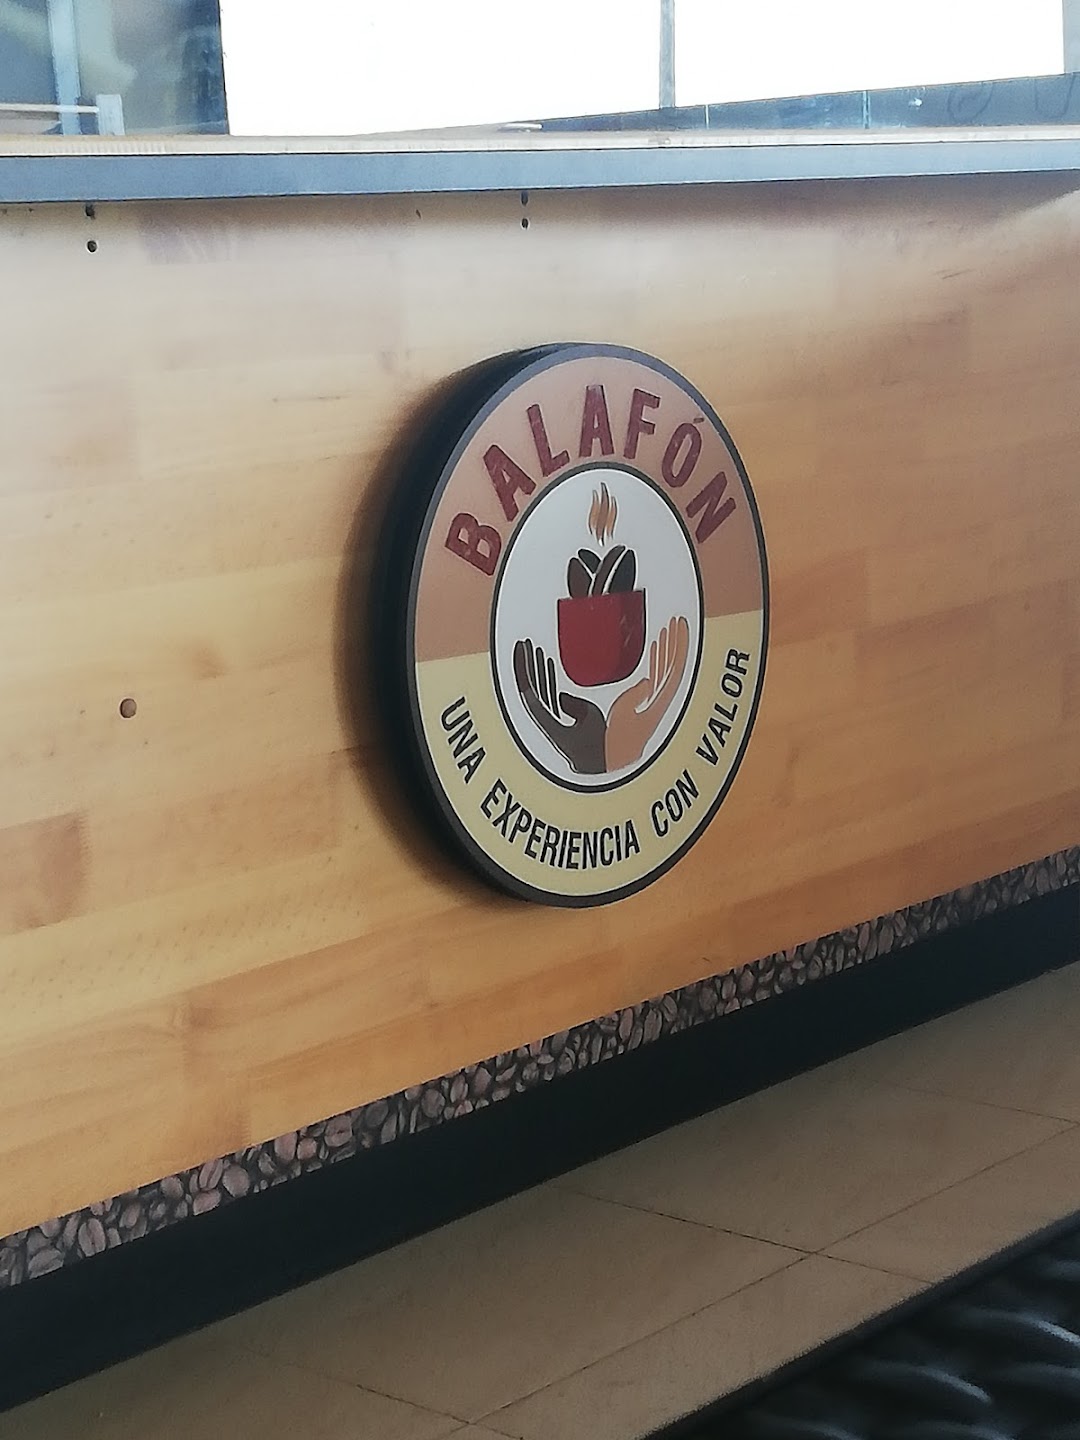 Balafon Cafe